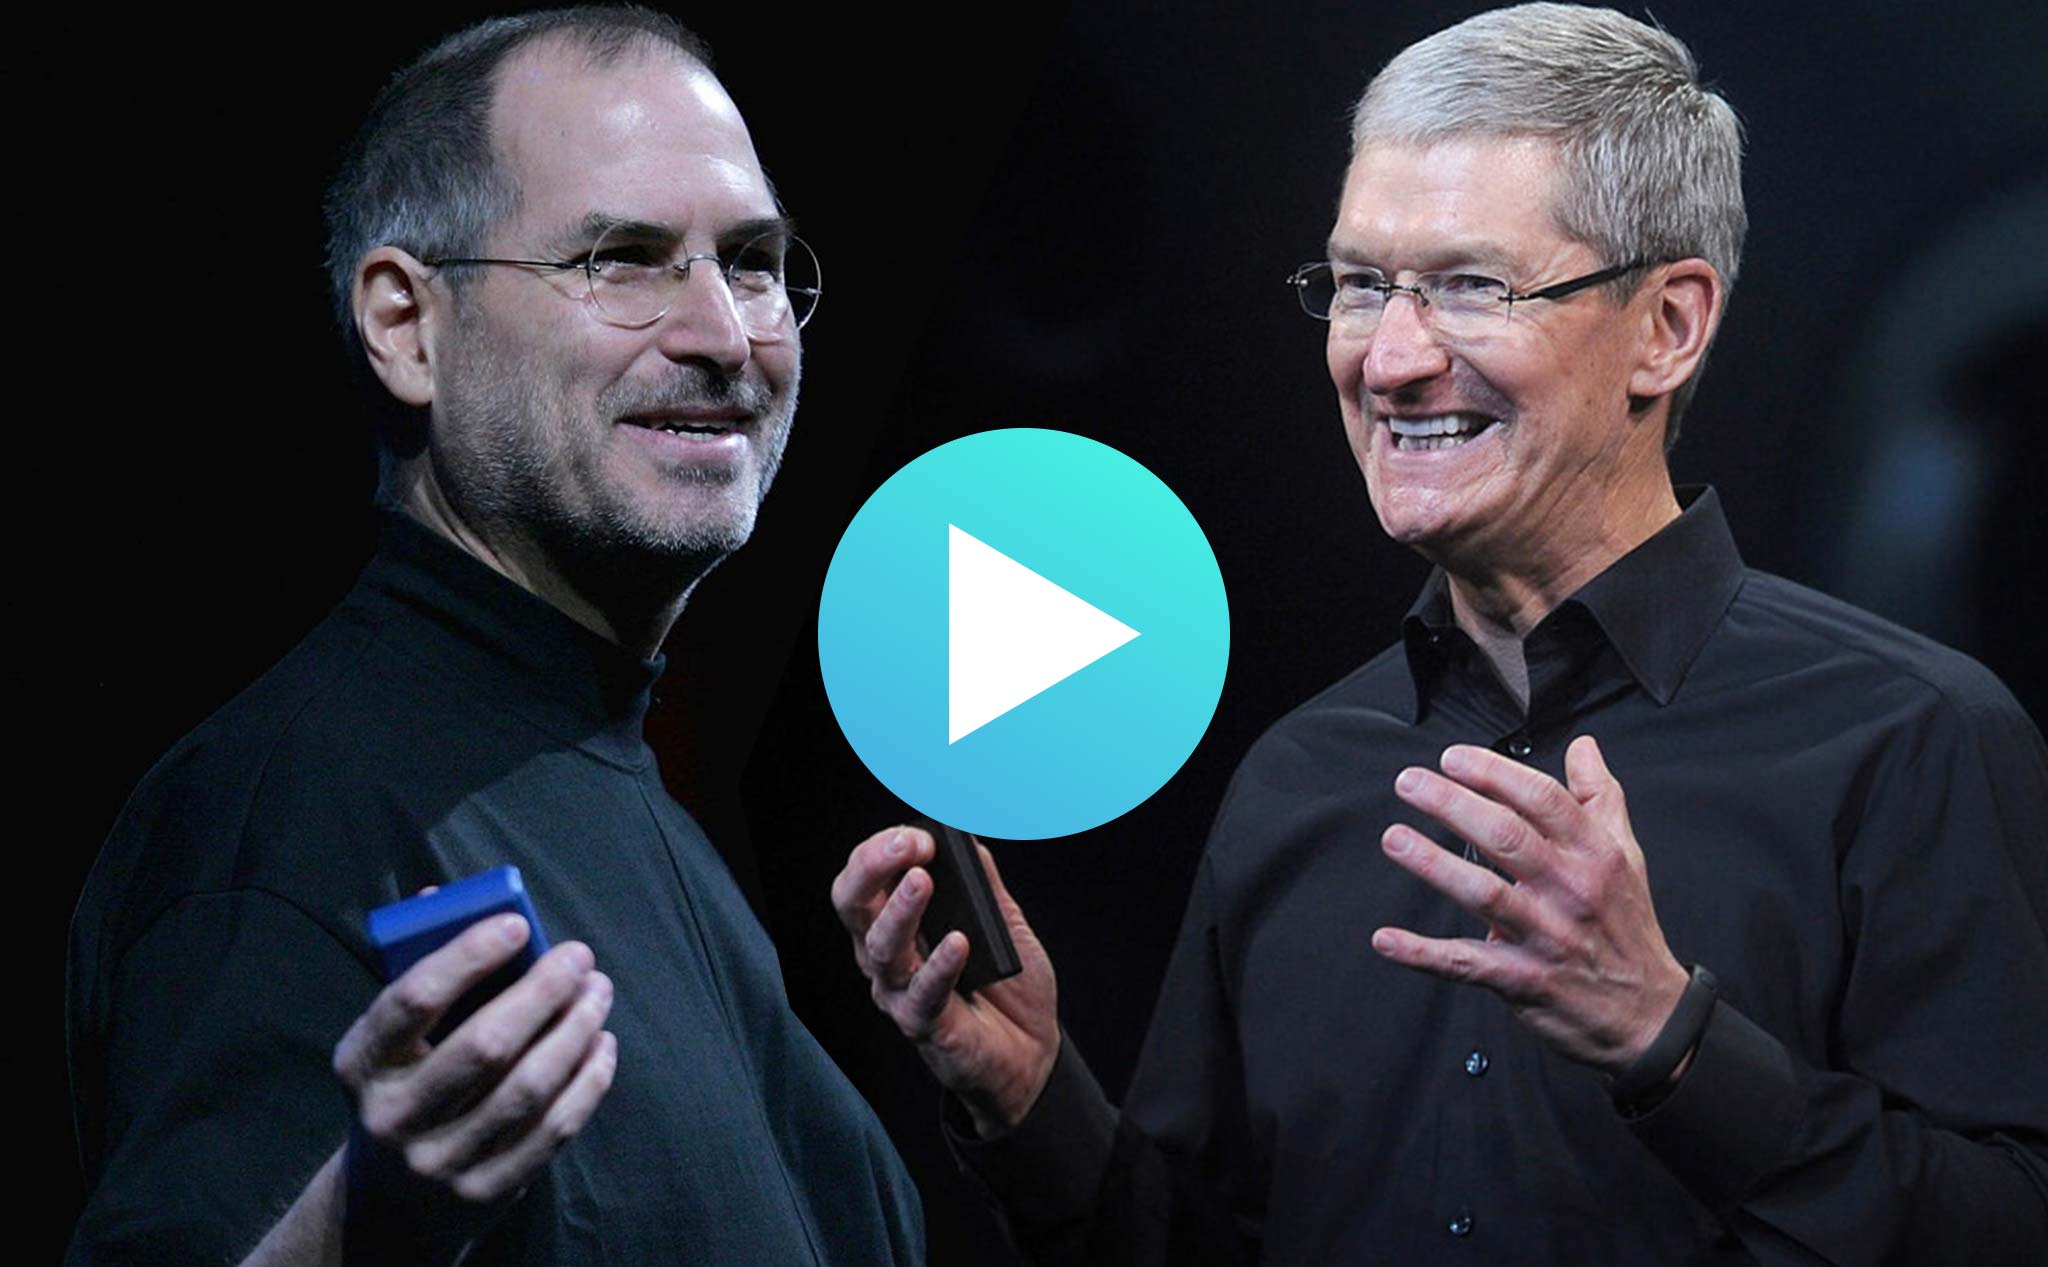 [Vui] Sự khác nhau về cách dùng từ giữa Steve Jobs và Tim Cook